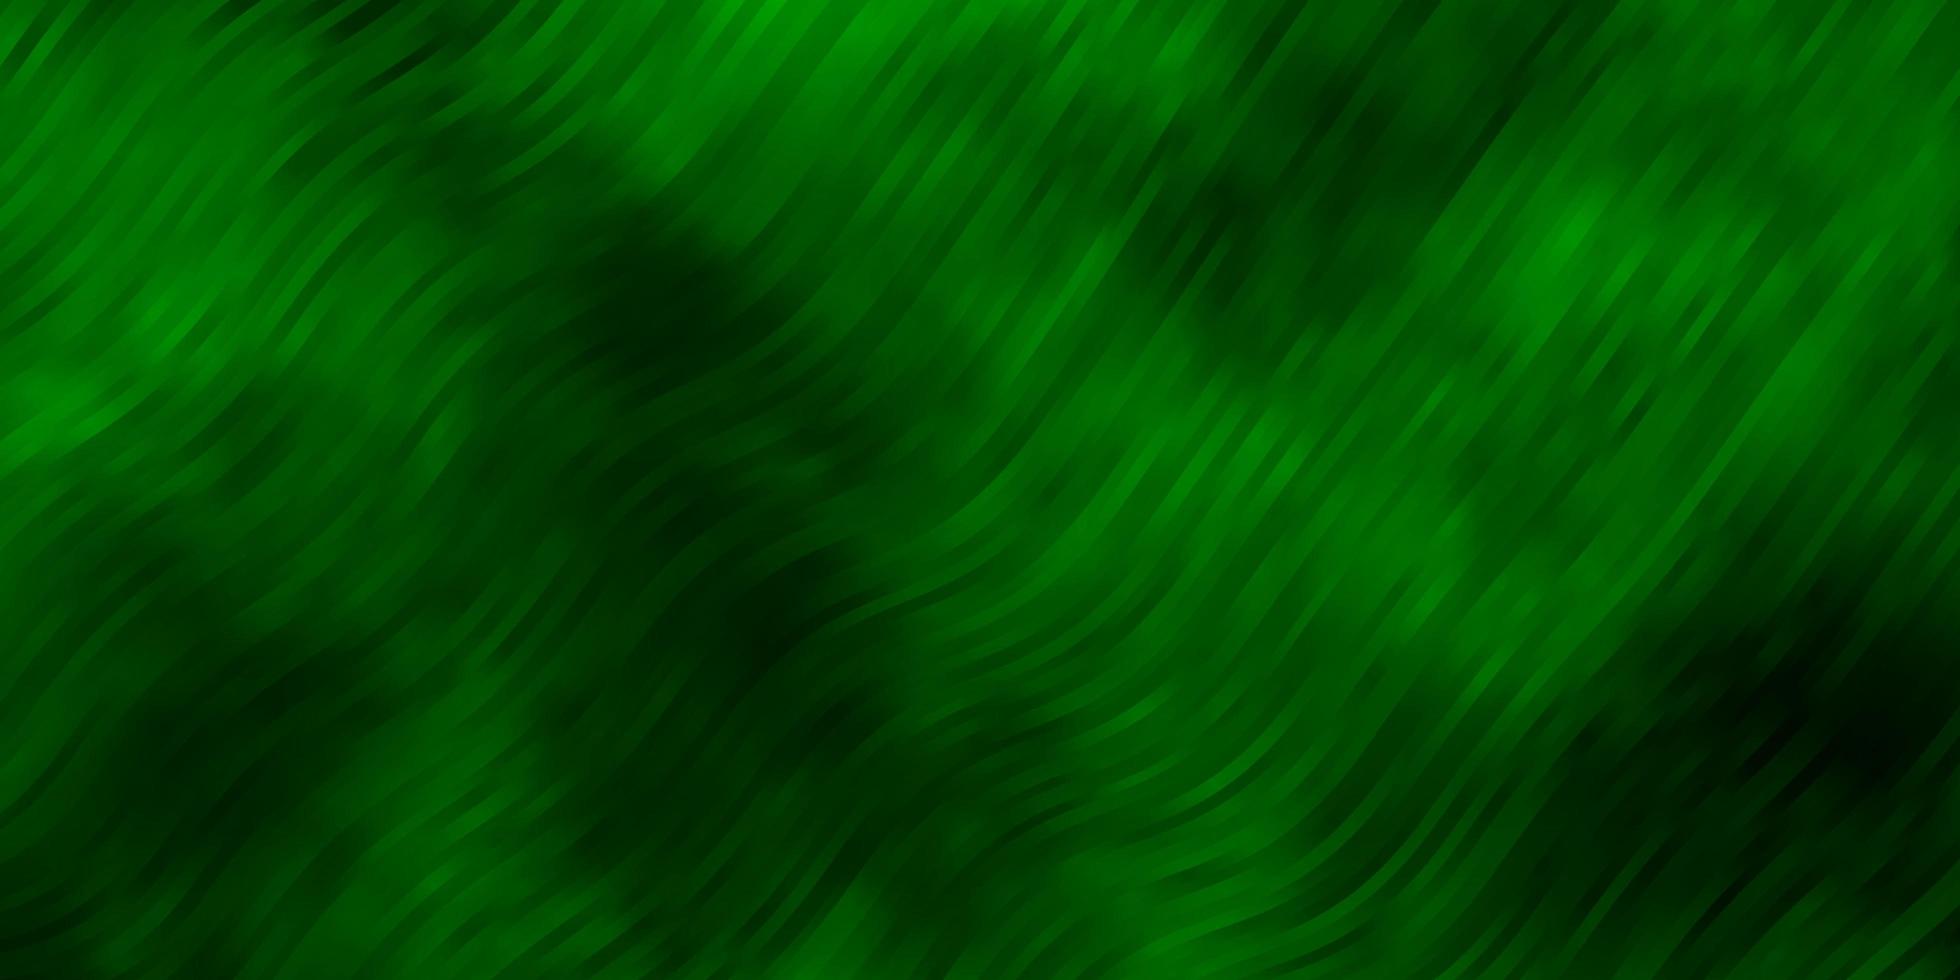 textura de vector verde claro con curvas.